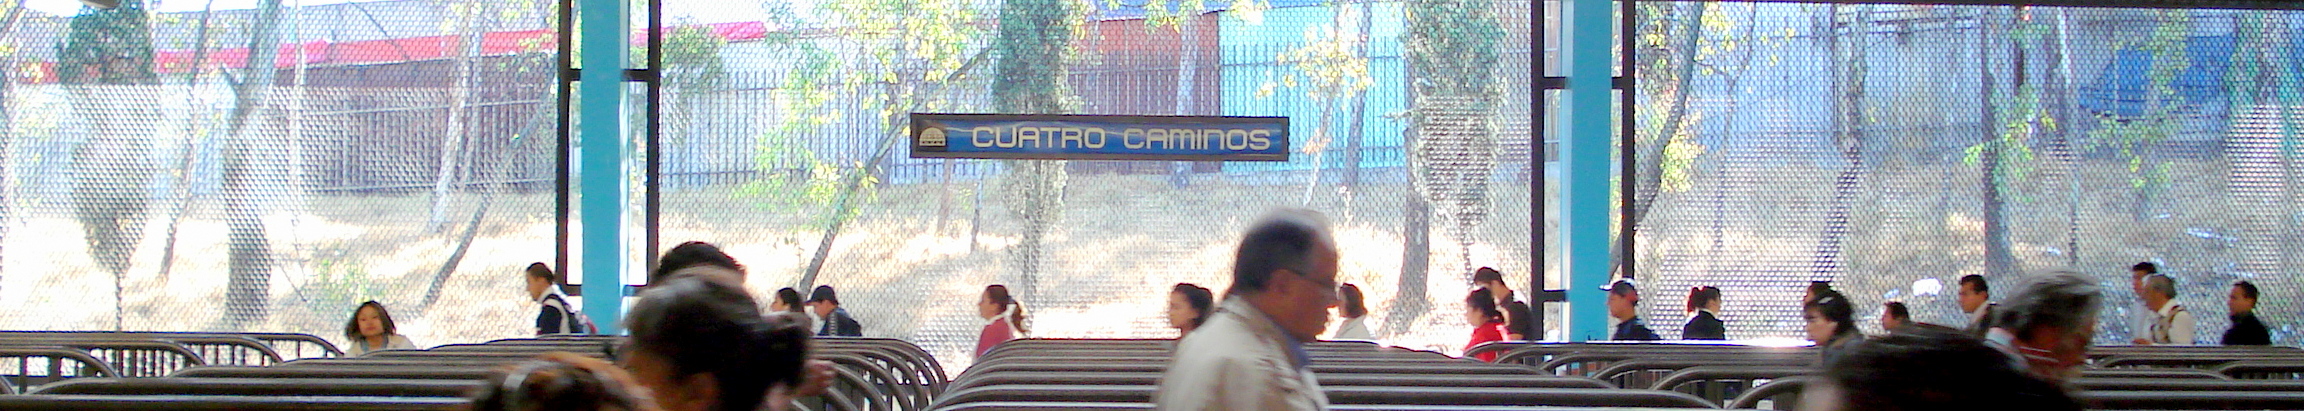 Metro Cuatro Caminos